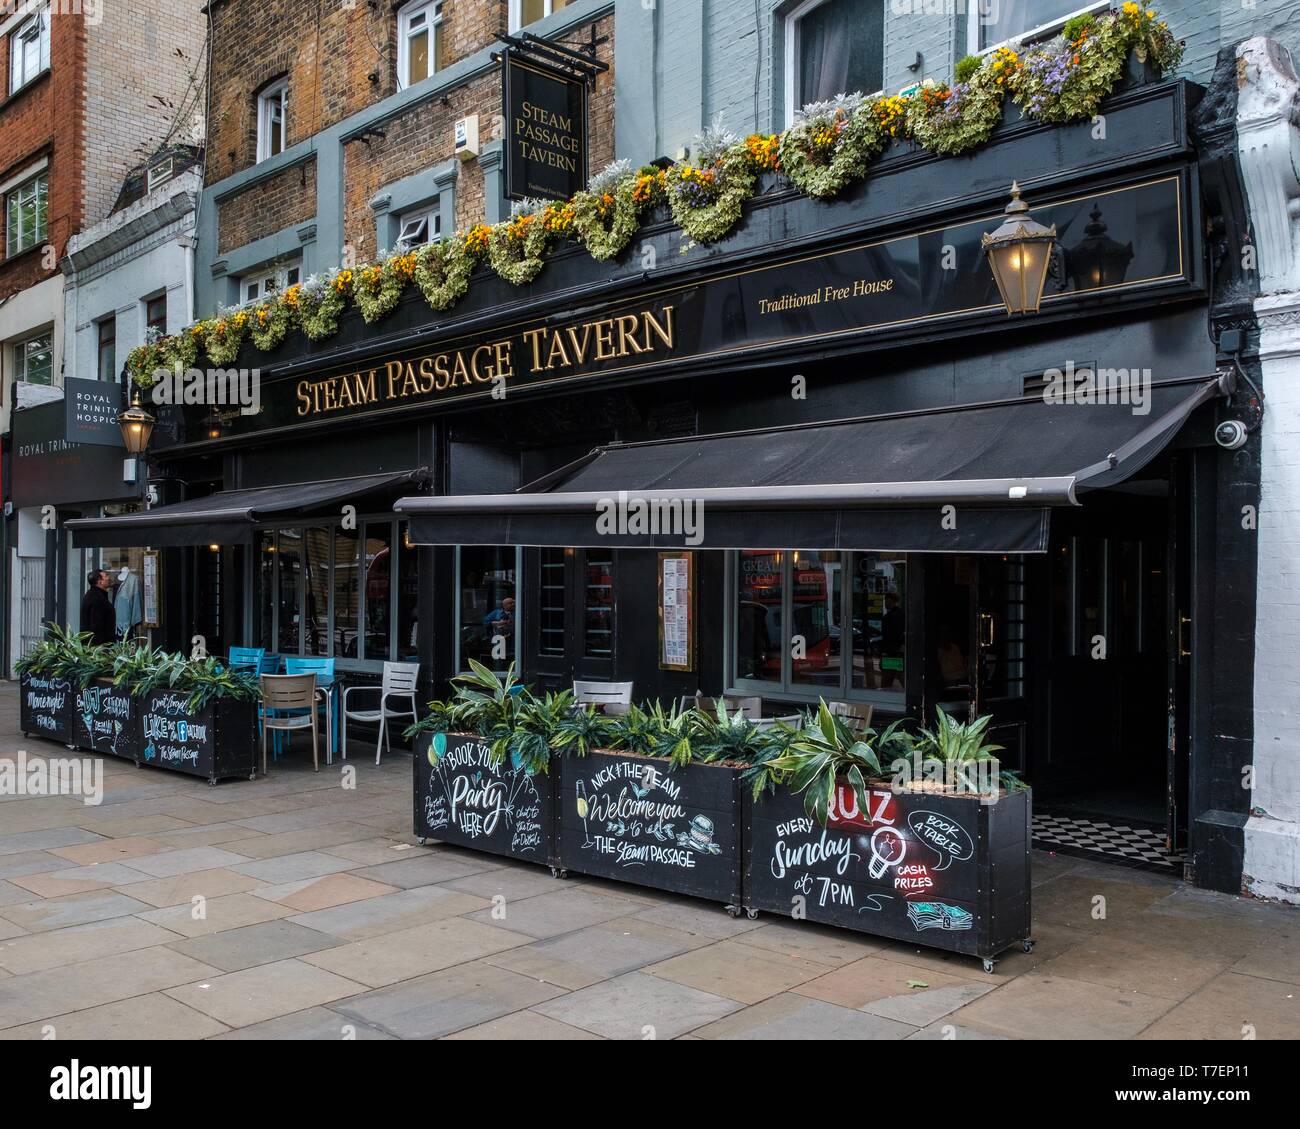 Le passage de vapeur tavern, Upper Street, Londres Banque D'Images